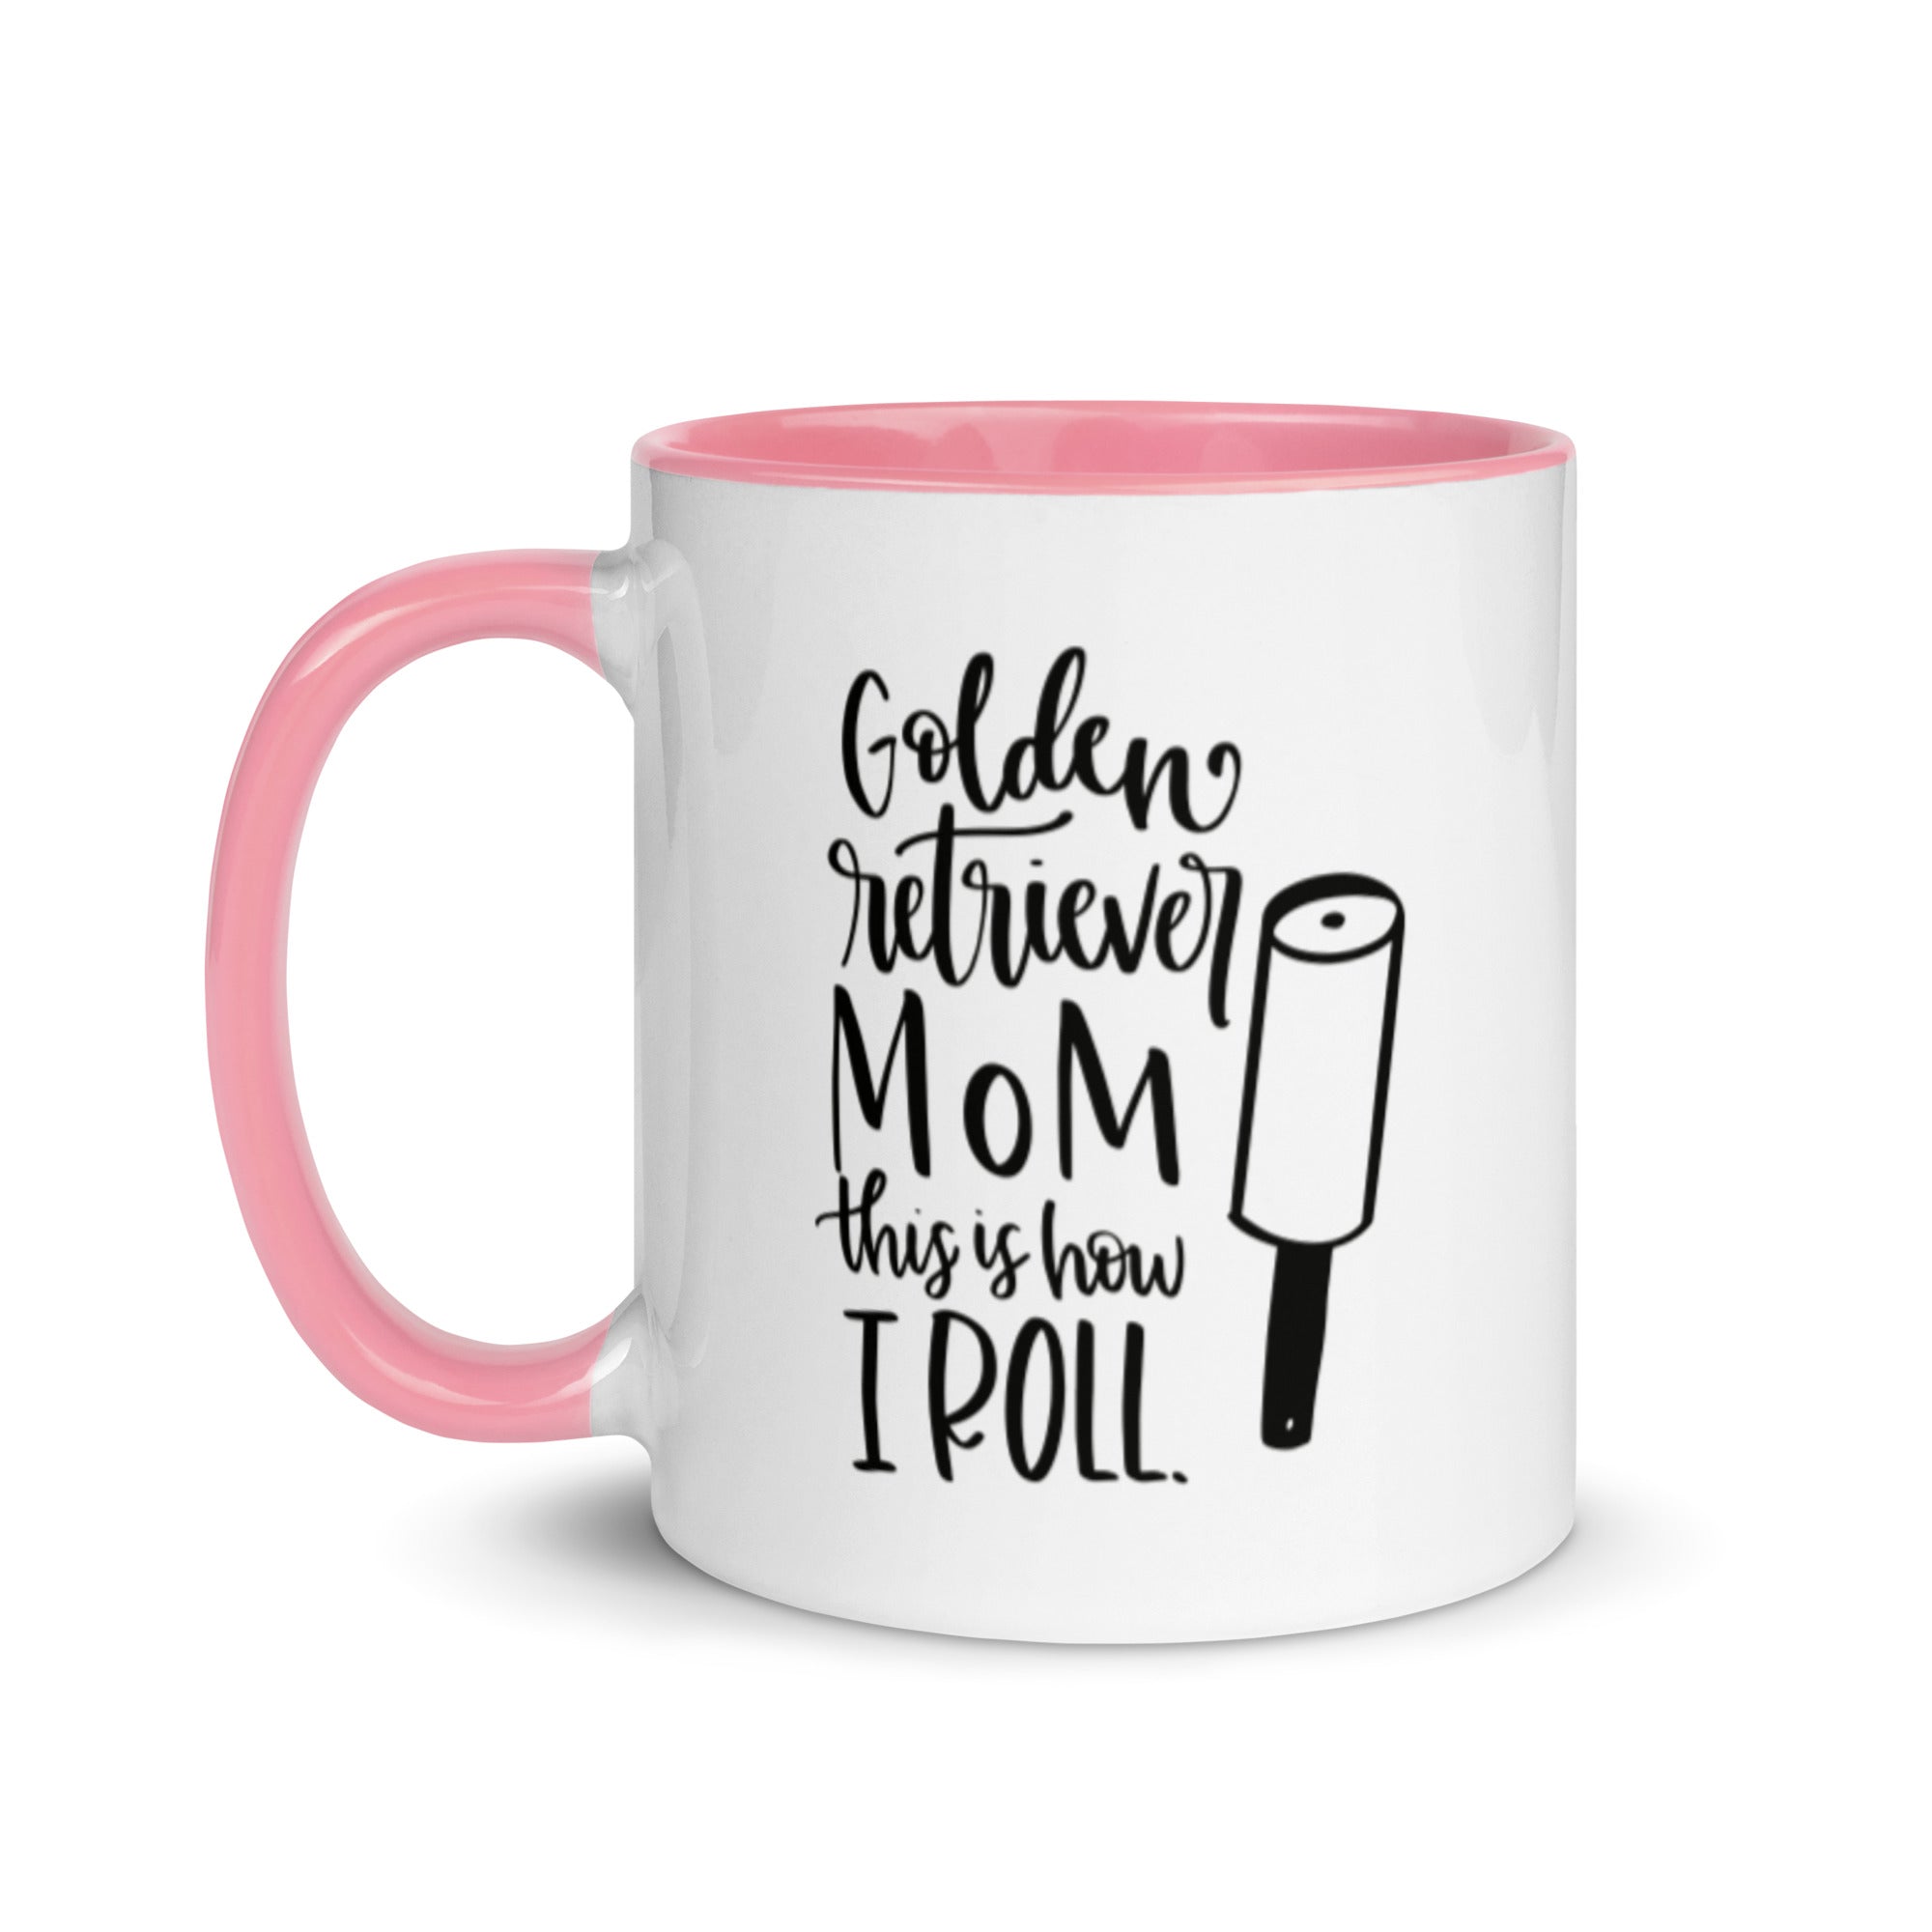 https://bigredegg.com/cdn/shop/products/golden_retriever_mom_mug_-_pink_1.jpg?v=1655221370